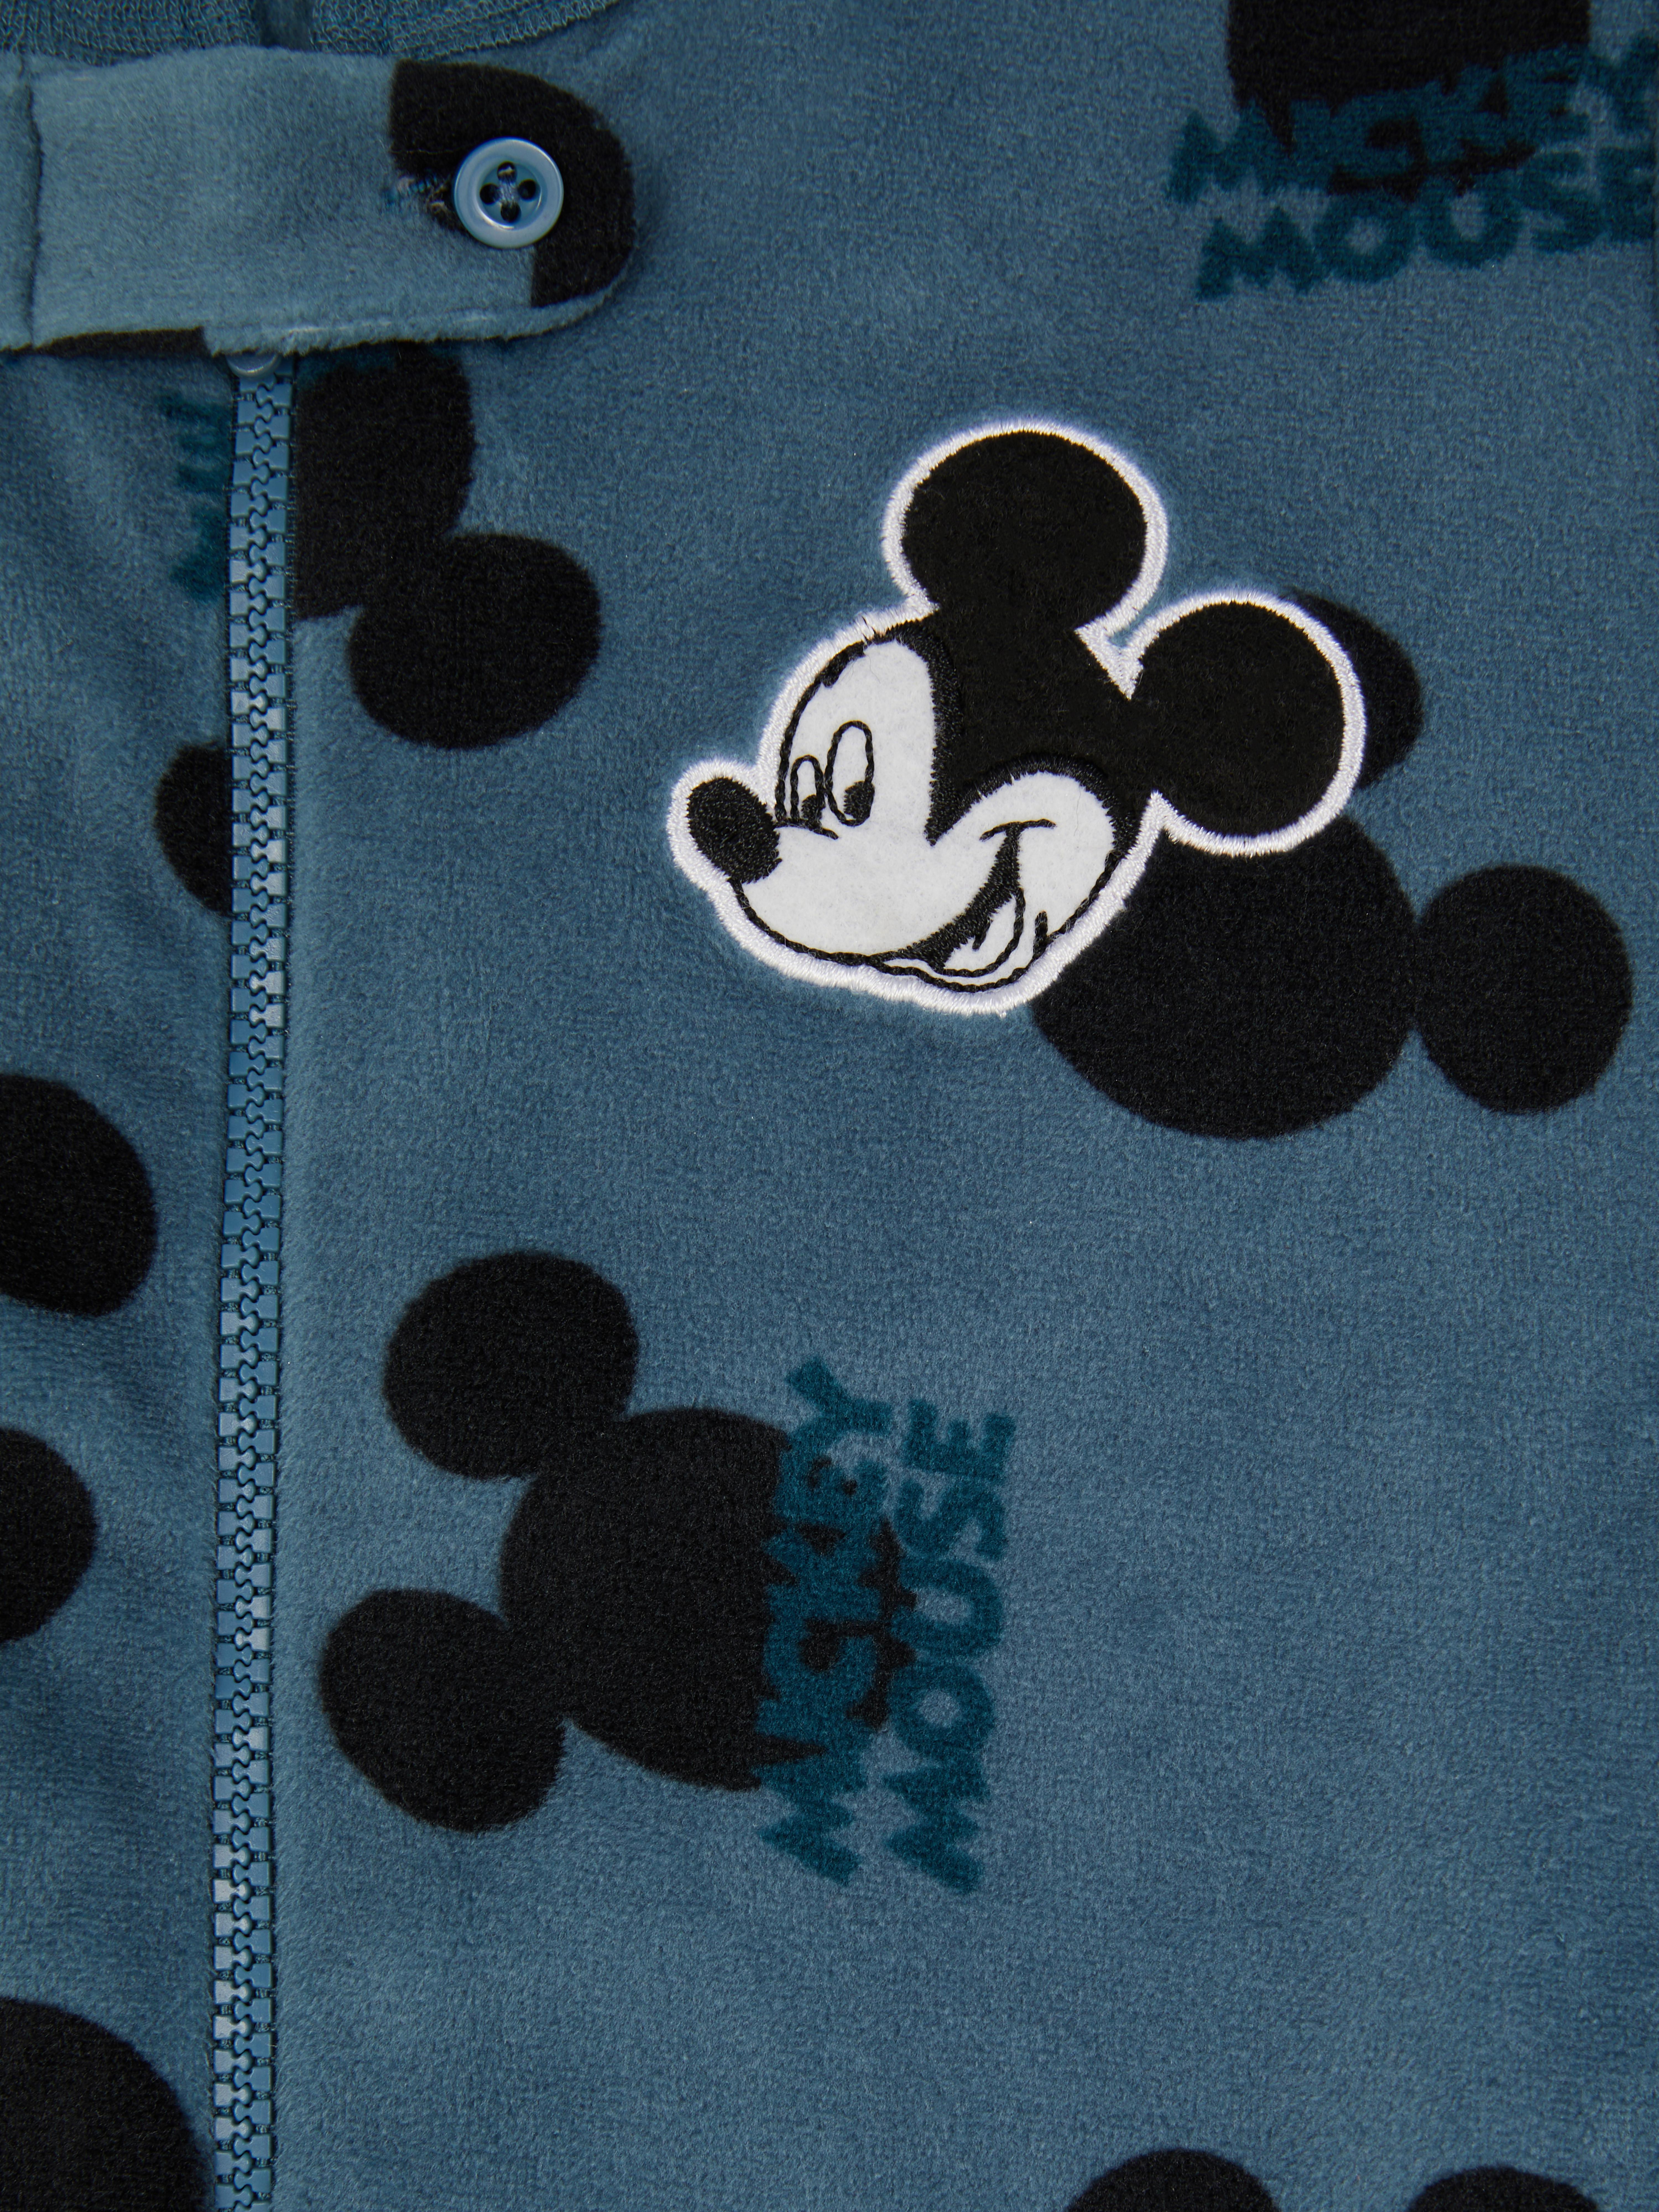 Disney's Mickey Mouse Minky Babygrow